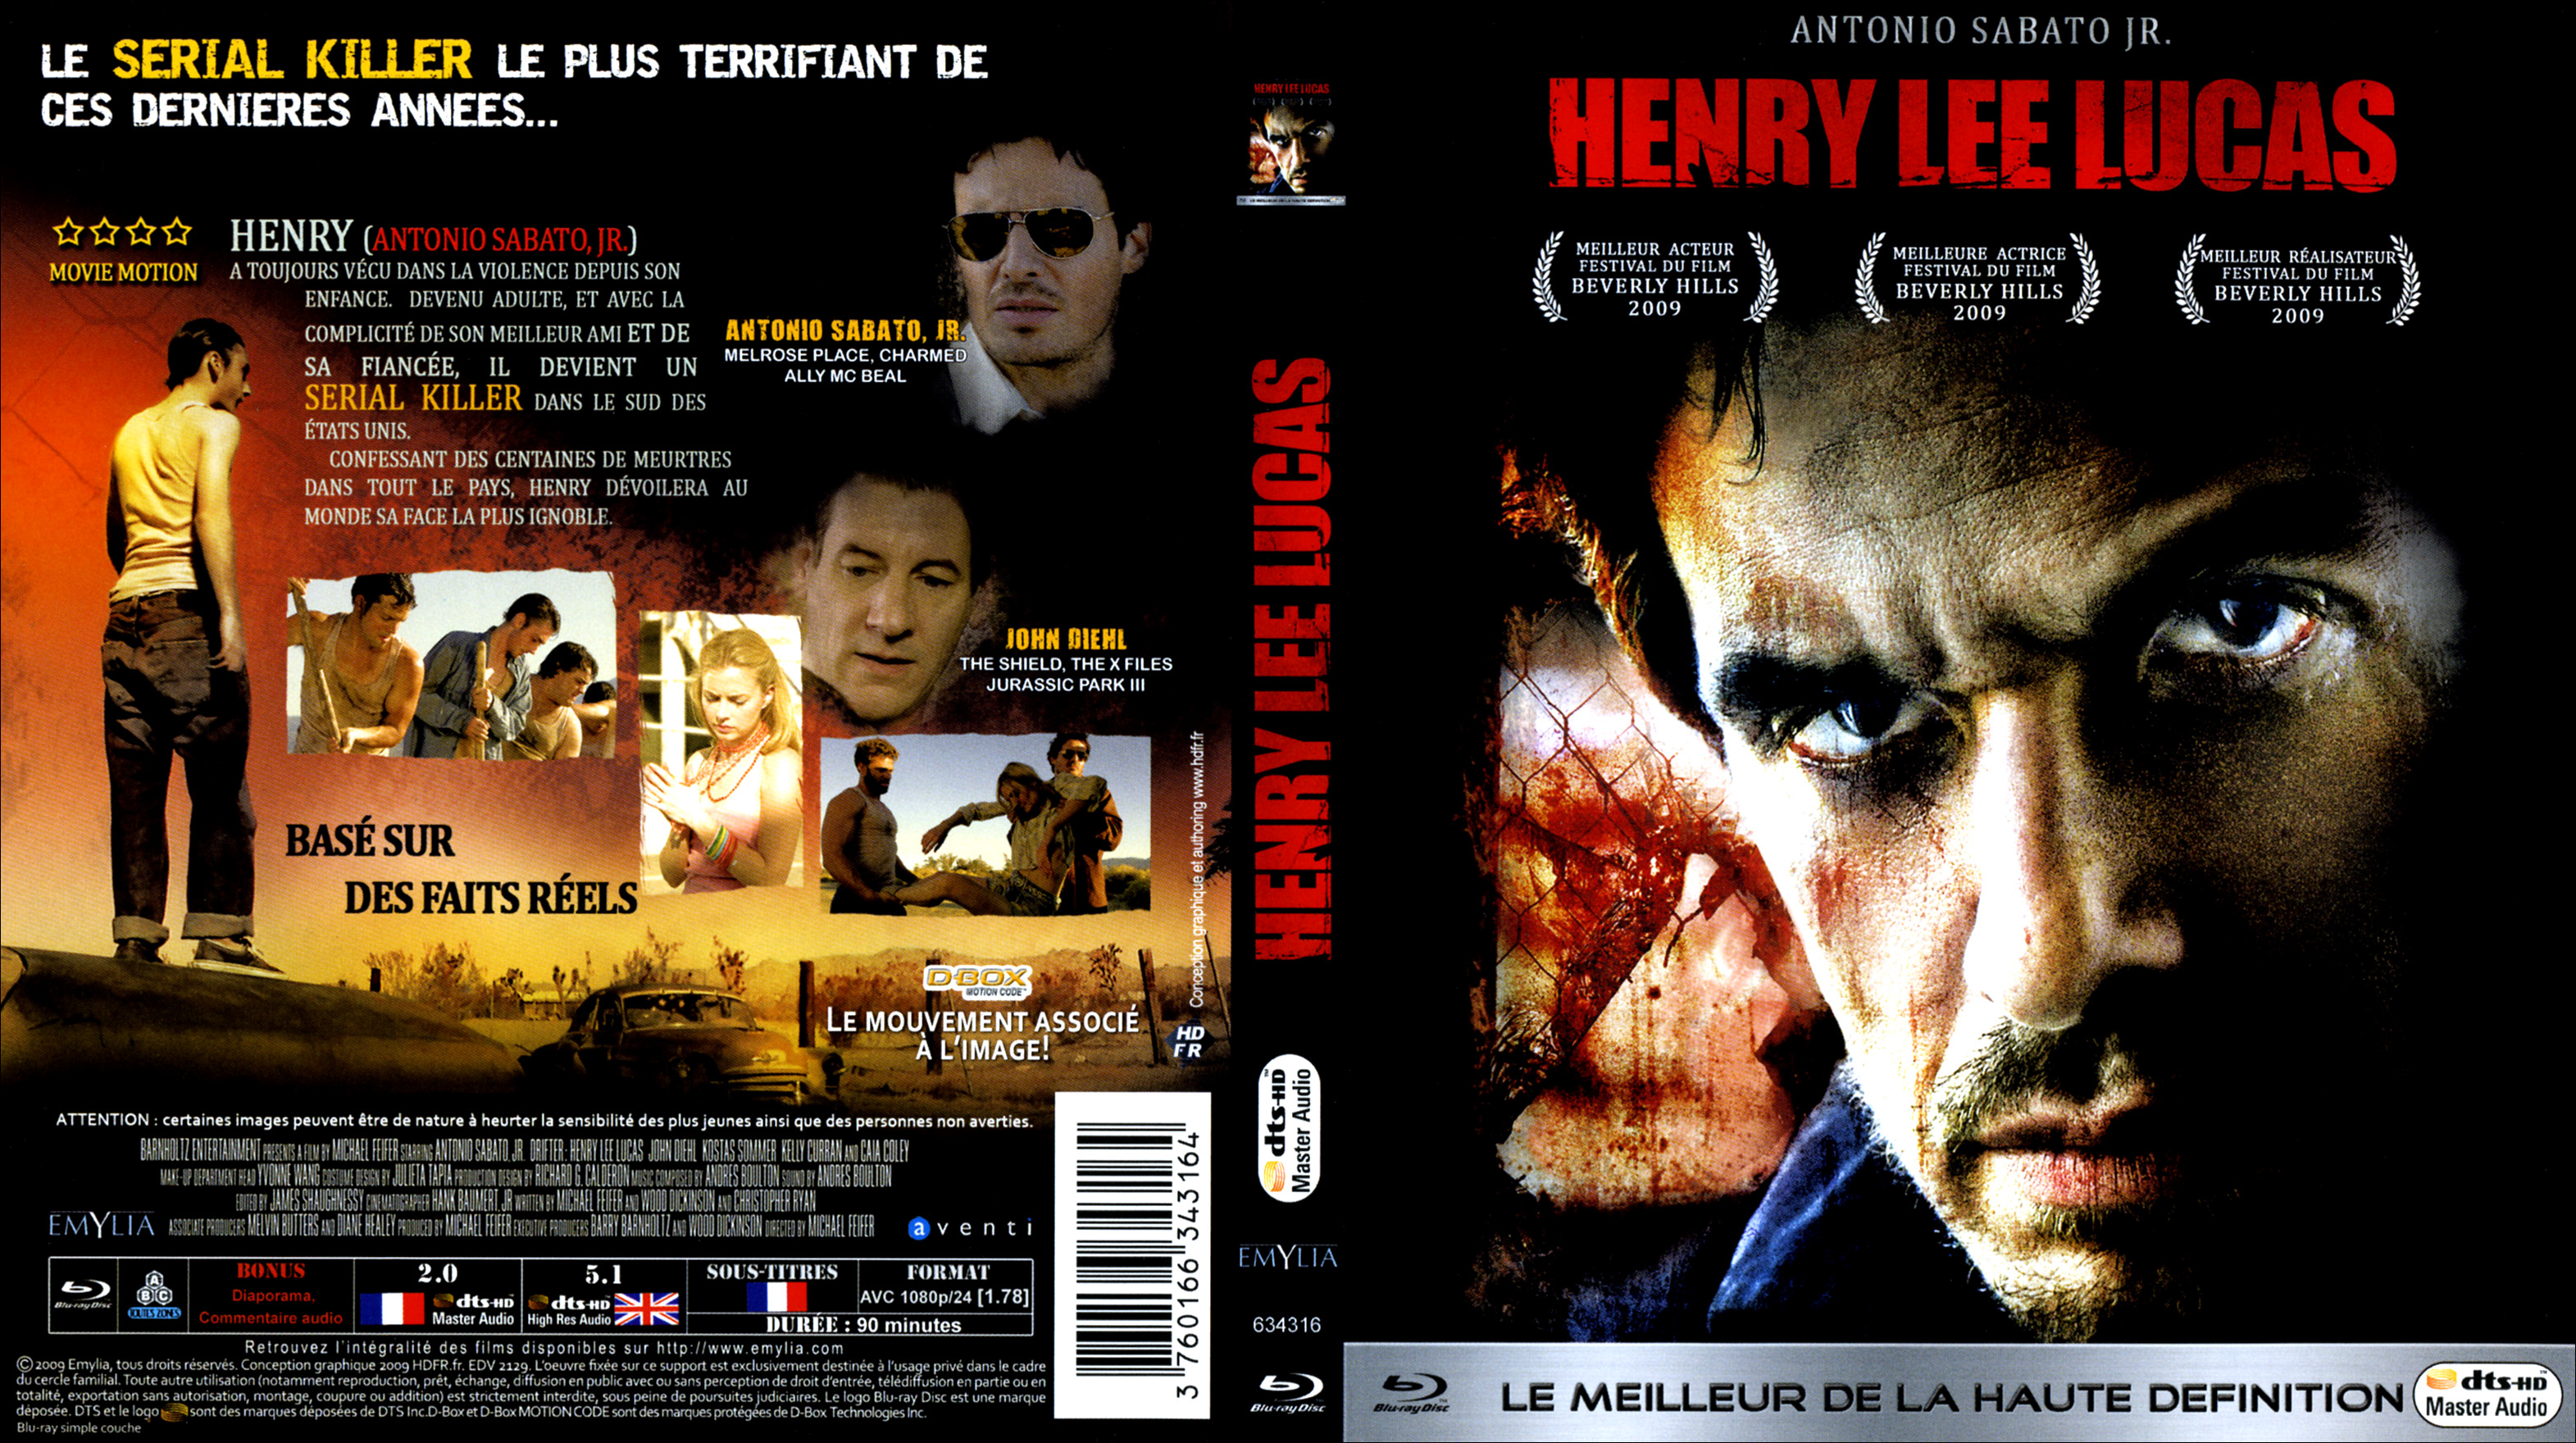 Jaquette DVD de Henry Lee Lucas (BLU-RAY) - Cinéma Passion